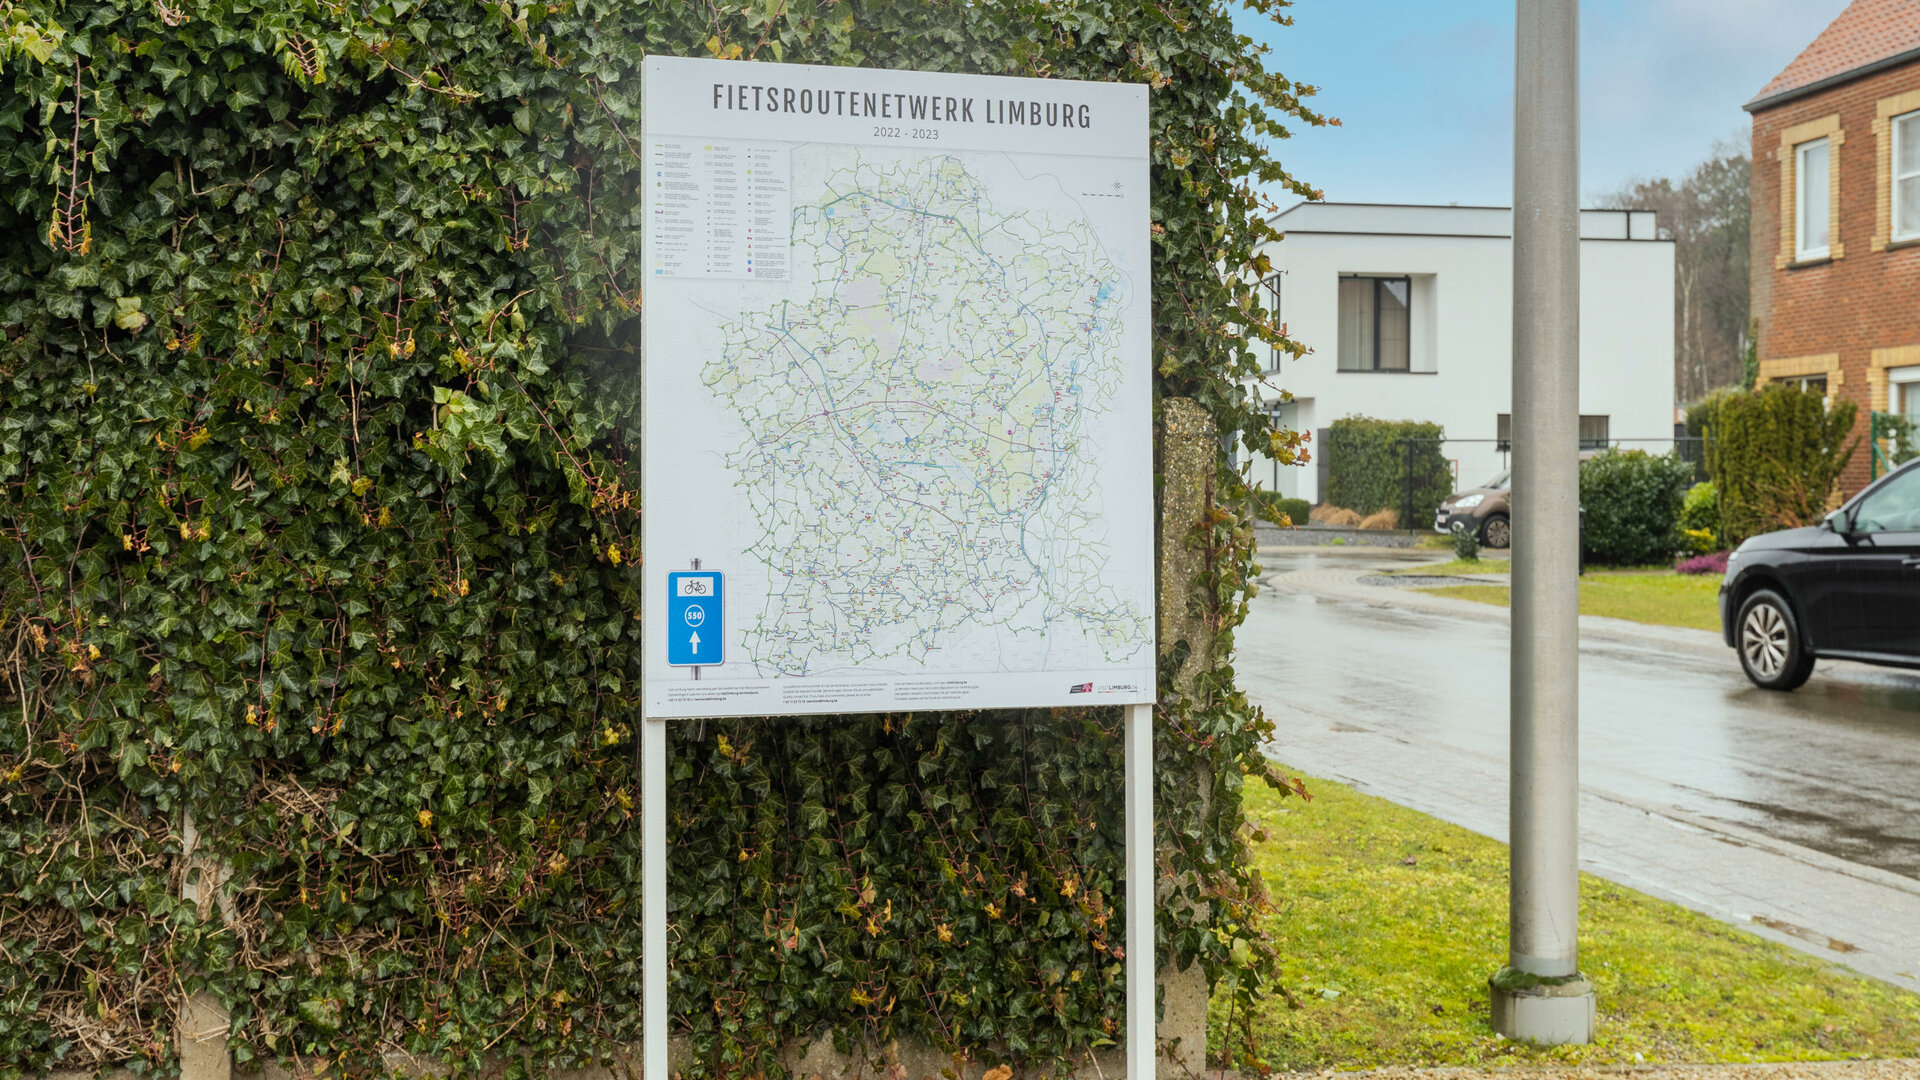 Tram 17 - Aan de voorzijde vindt u een kaart van fietsroutenetwerk Limburg.